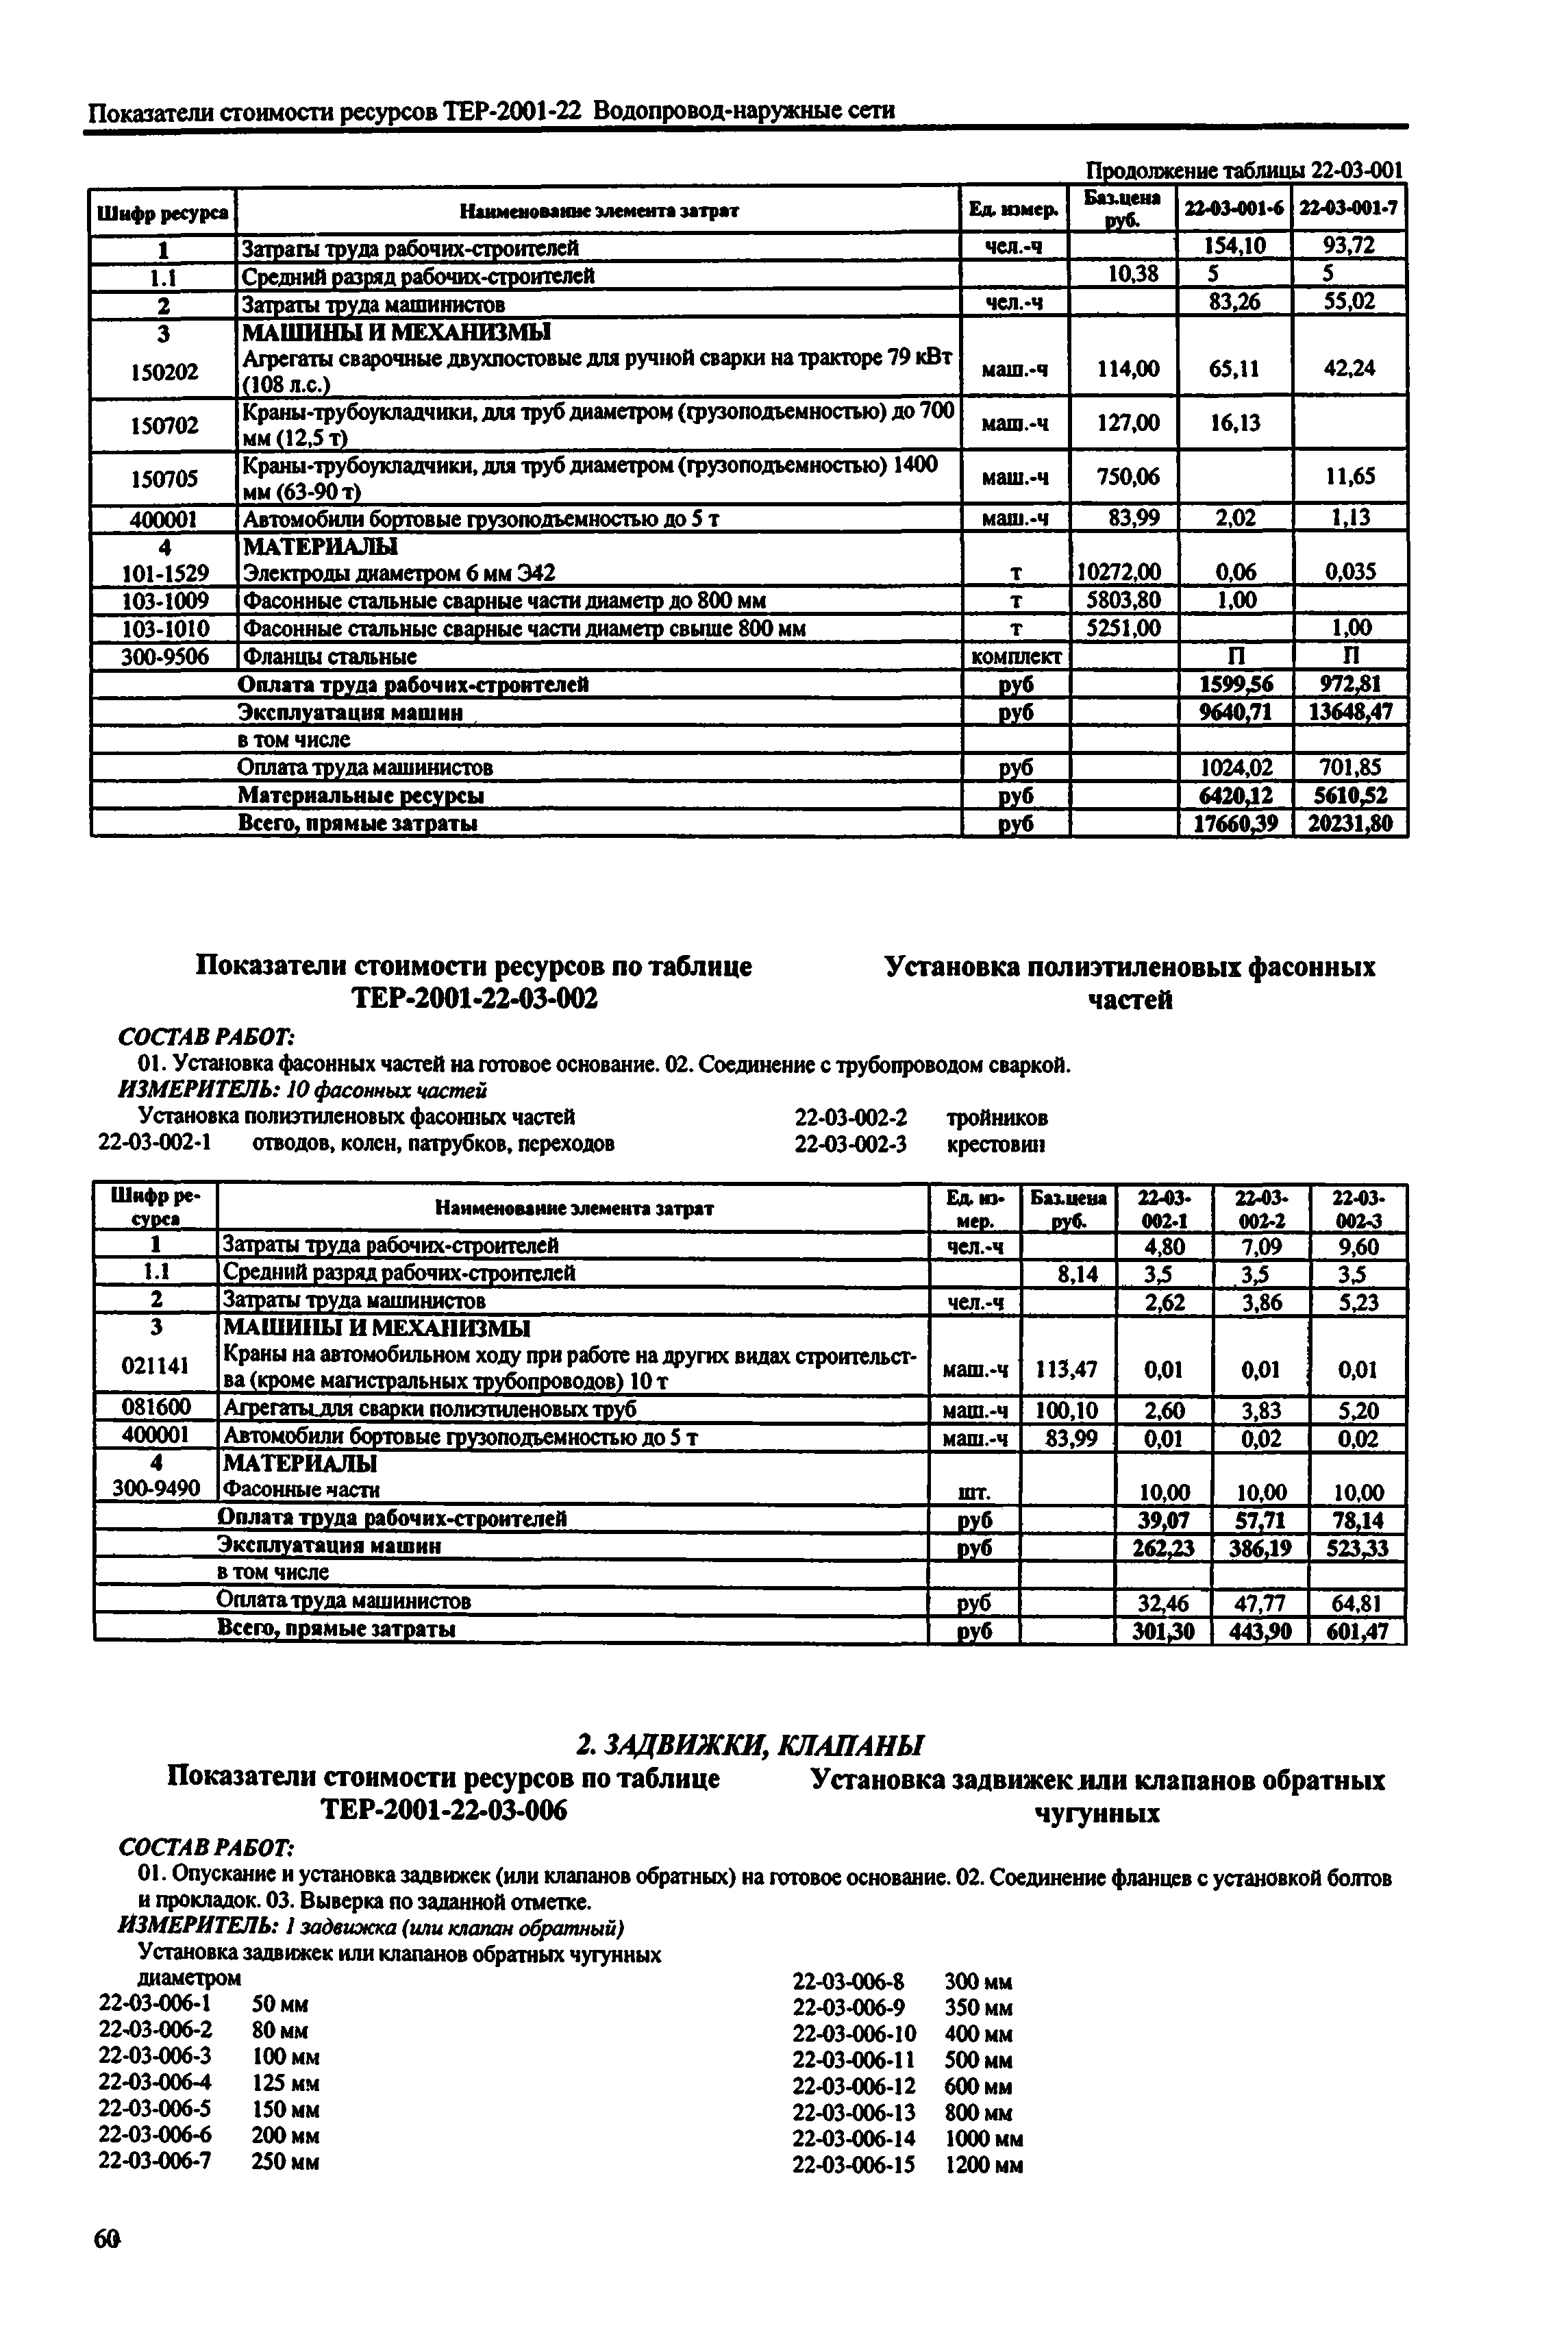 Справочное пособие к ТЕР 81-02-22-2001